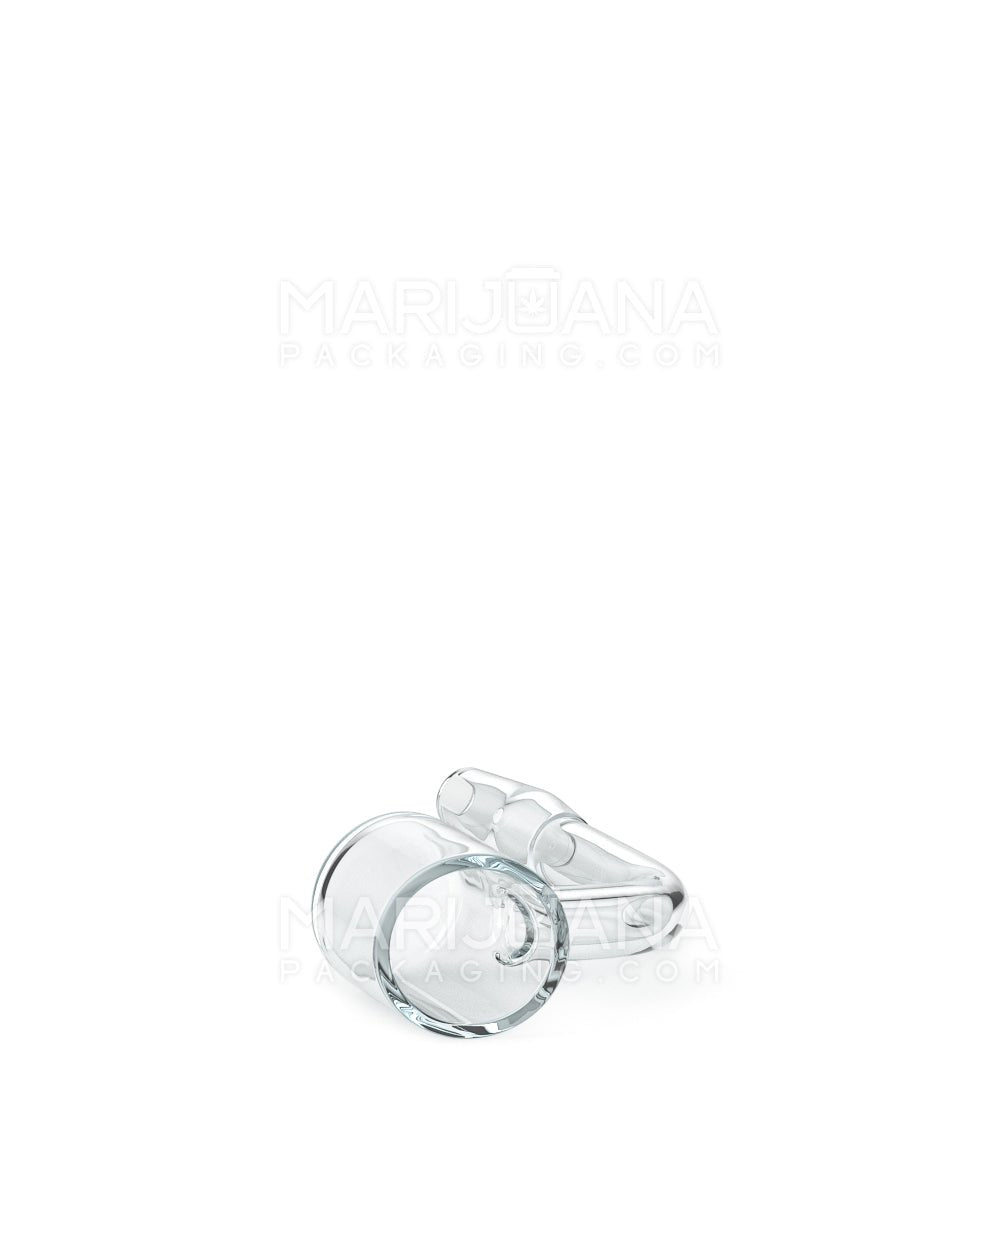 USA Glass | Thick 3.5mm Quartz Banger Nail | 10mm - 90 Degree - Male - 6